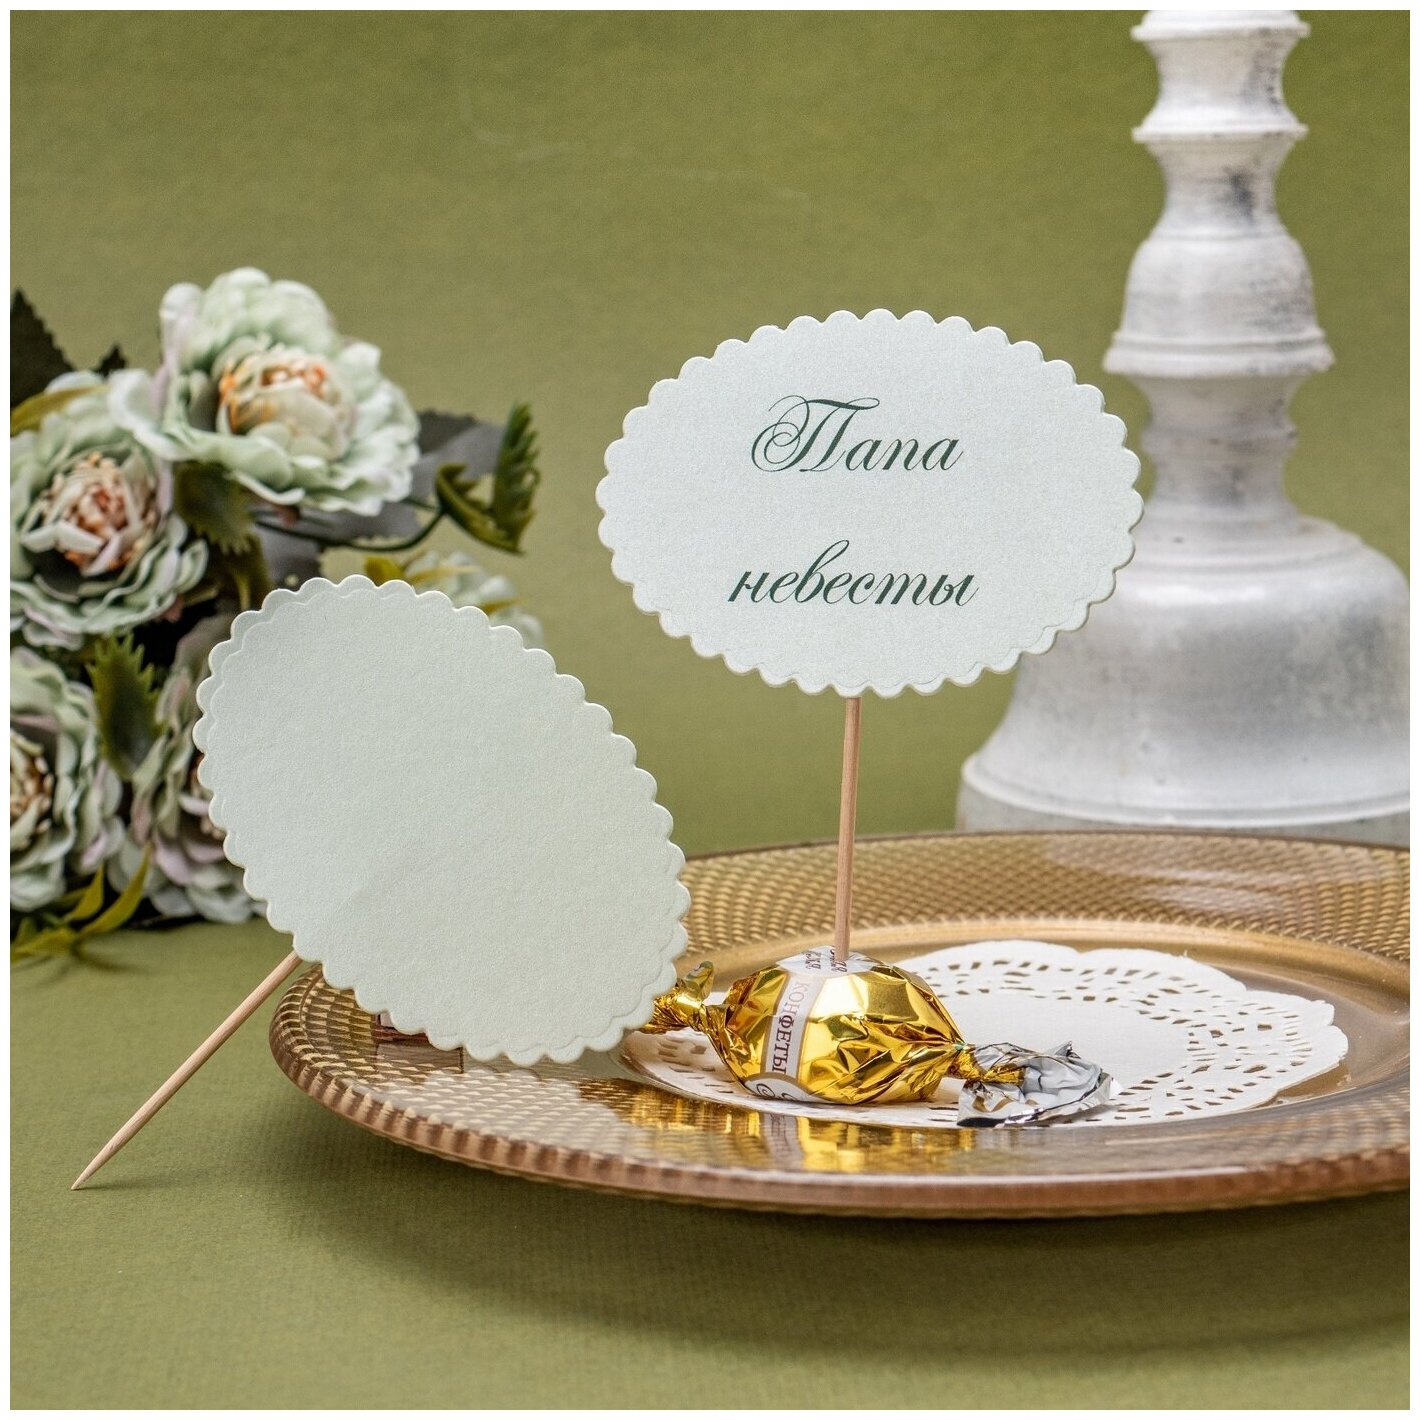 Однотонная банкетная карточка гостя светлого салатового цвета, овальной формы с фигурной окантовкой на деревянной палочке - шпажке, 10 штук